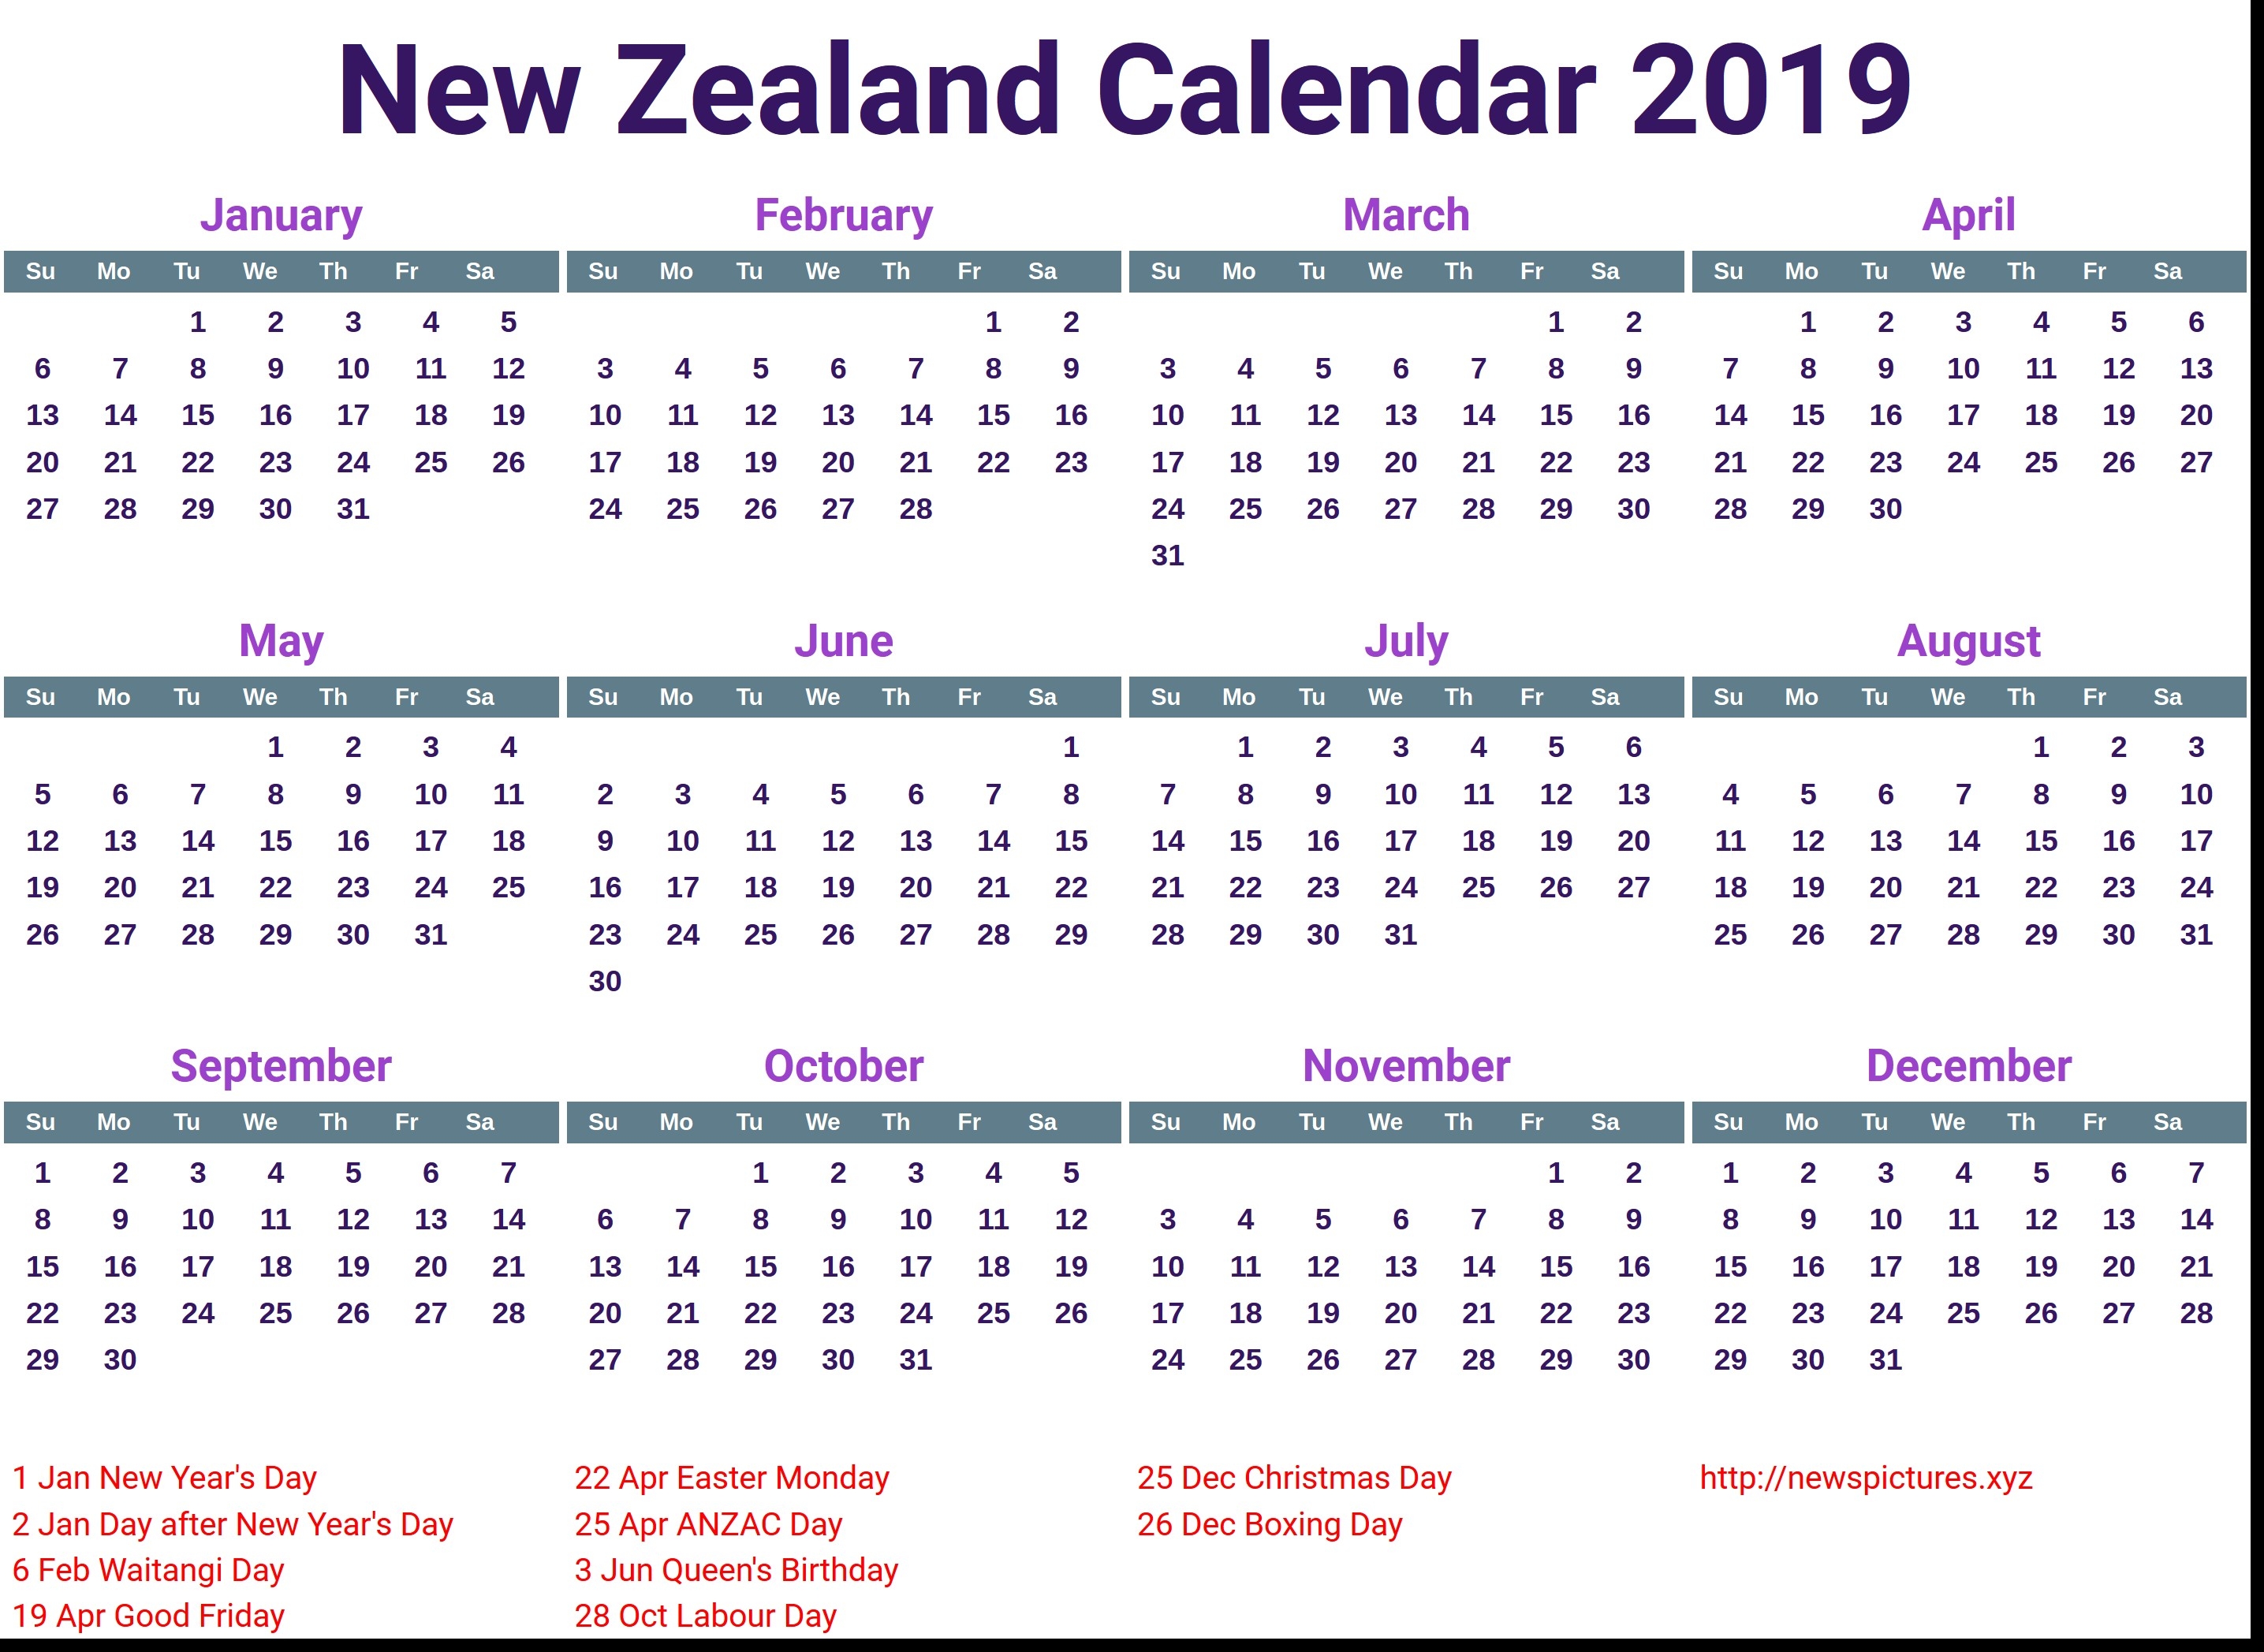 Calendar February 2019 Nz Sat Test Dates Your Best Test Date 2017 Extraordinary Calendar 2019 And 2020 Nz